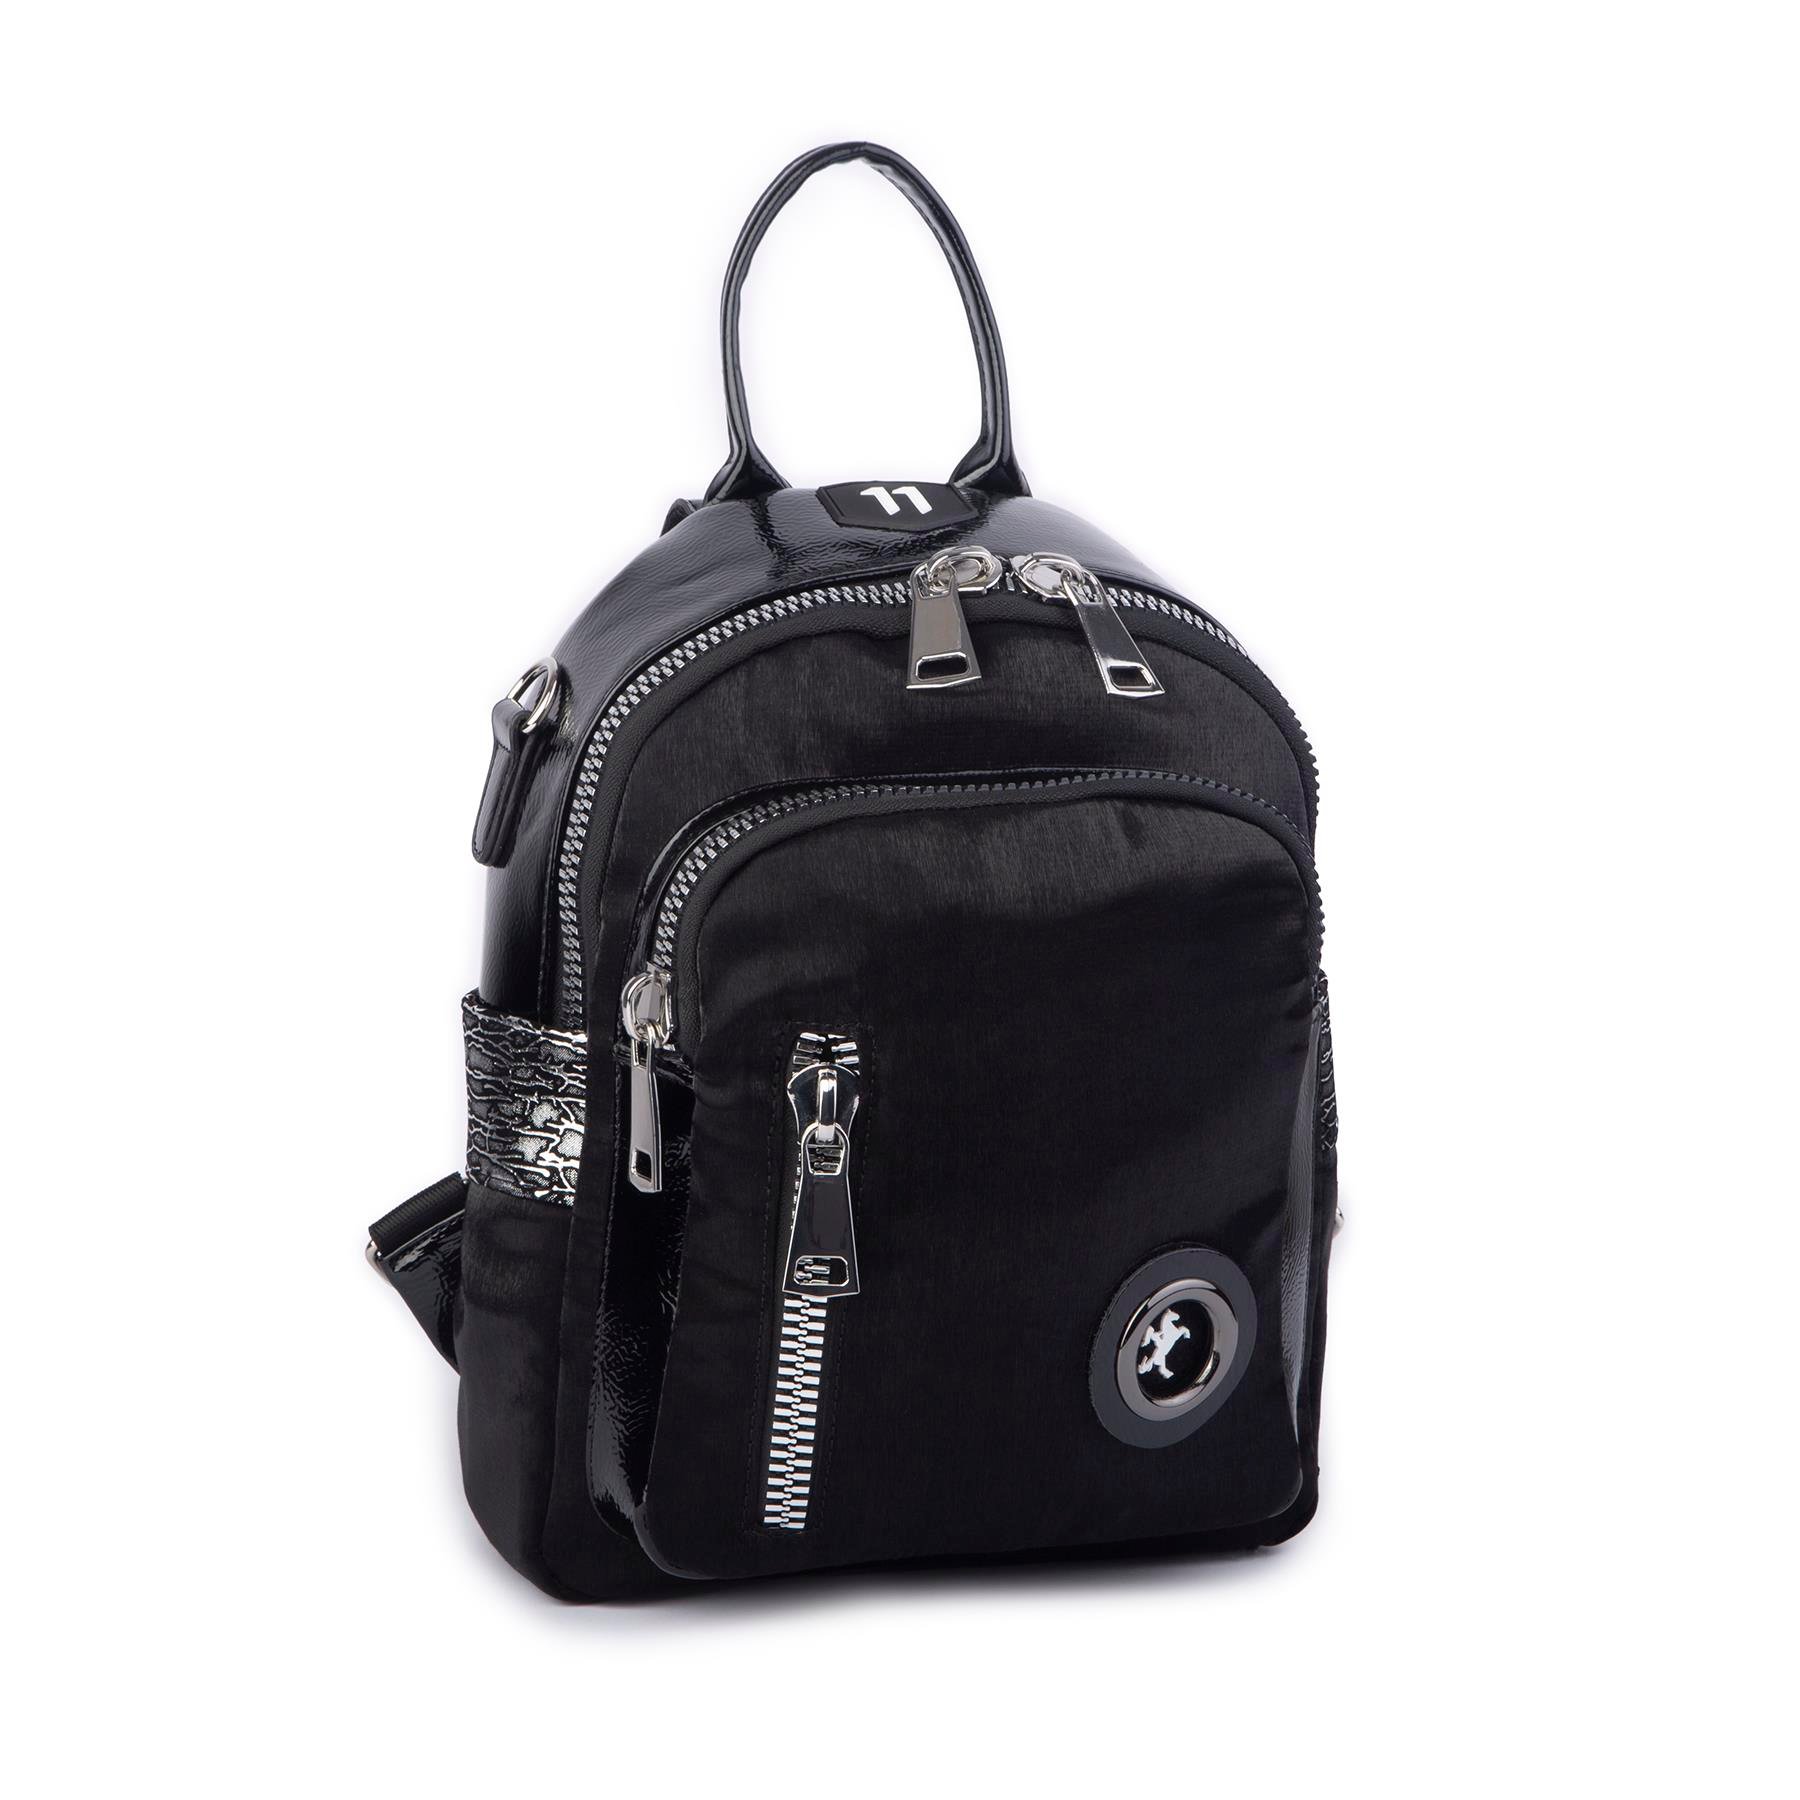 Nas Bag Kadın Dönüştürülebilir Sırt ve Omuz Çantası Şık Geniş Fermuarlı  Çanta (24x31x14 cm) Siyah SimliNas Bag